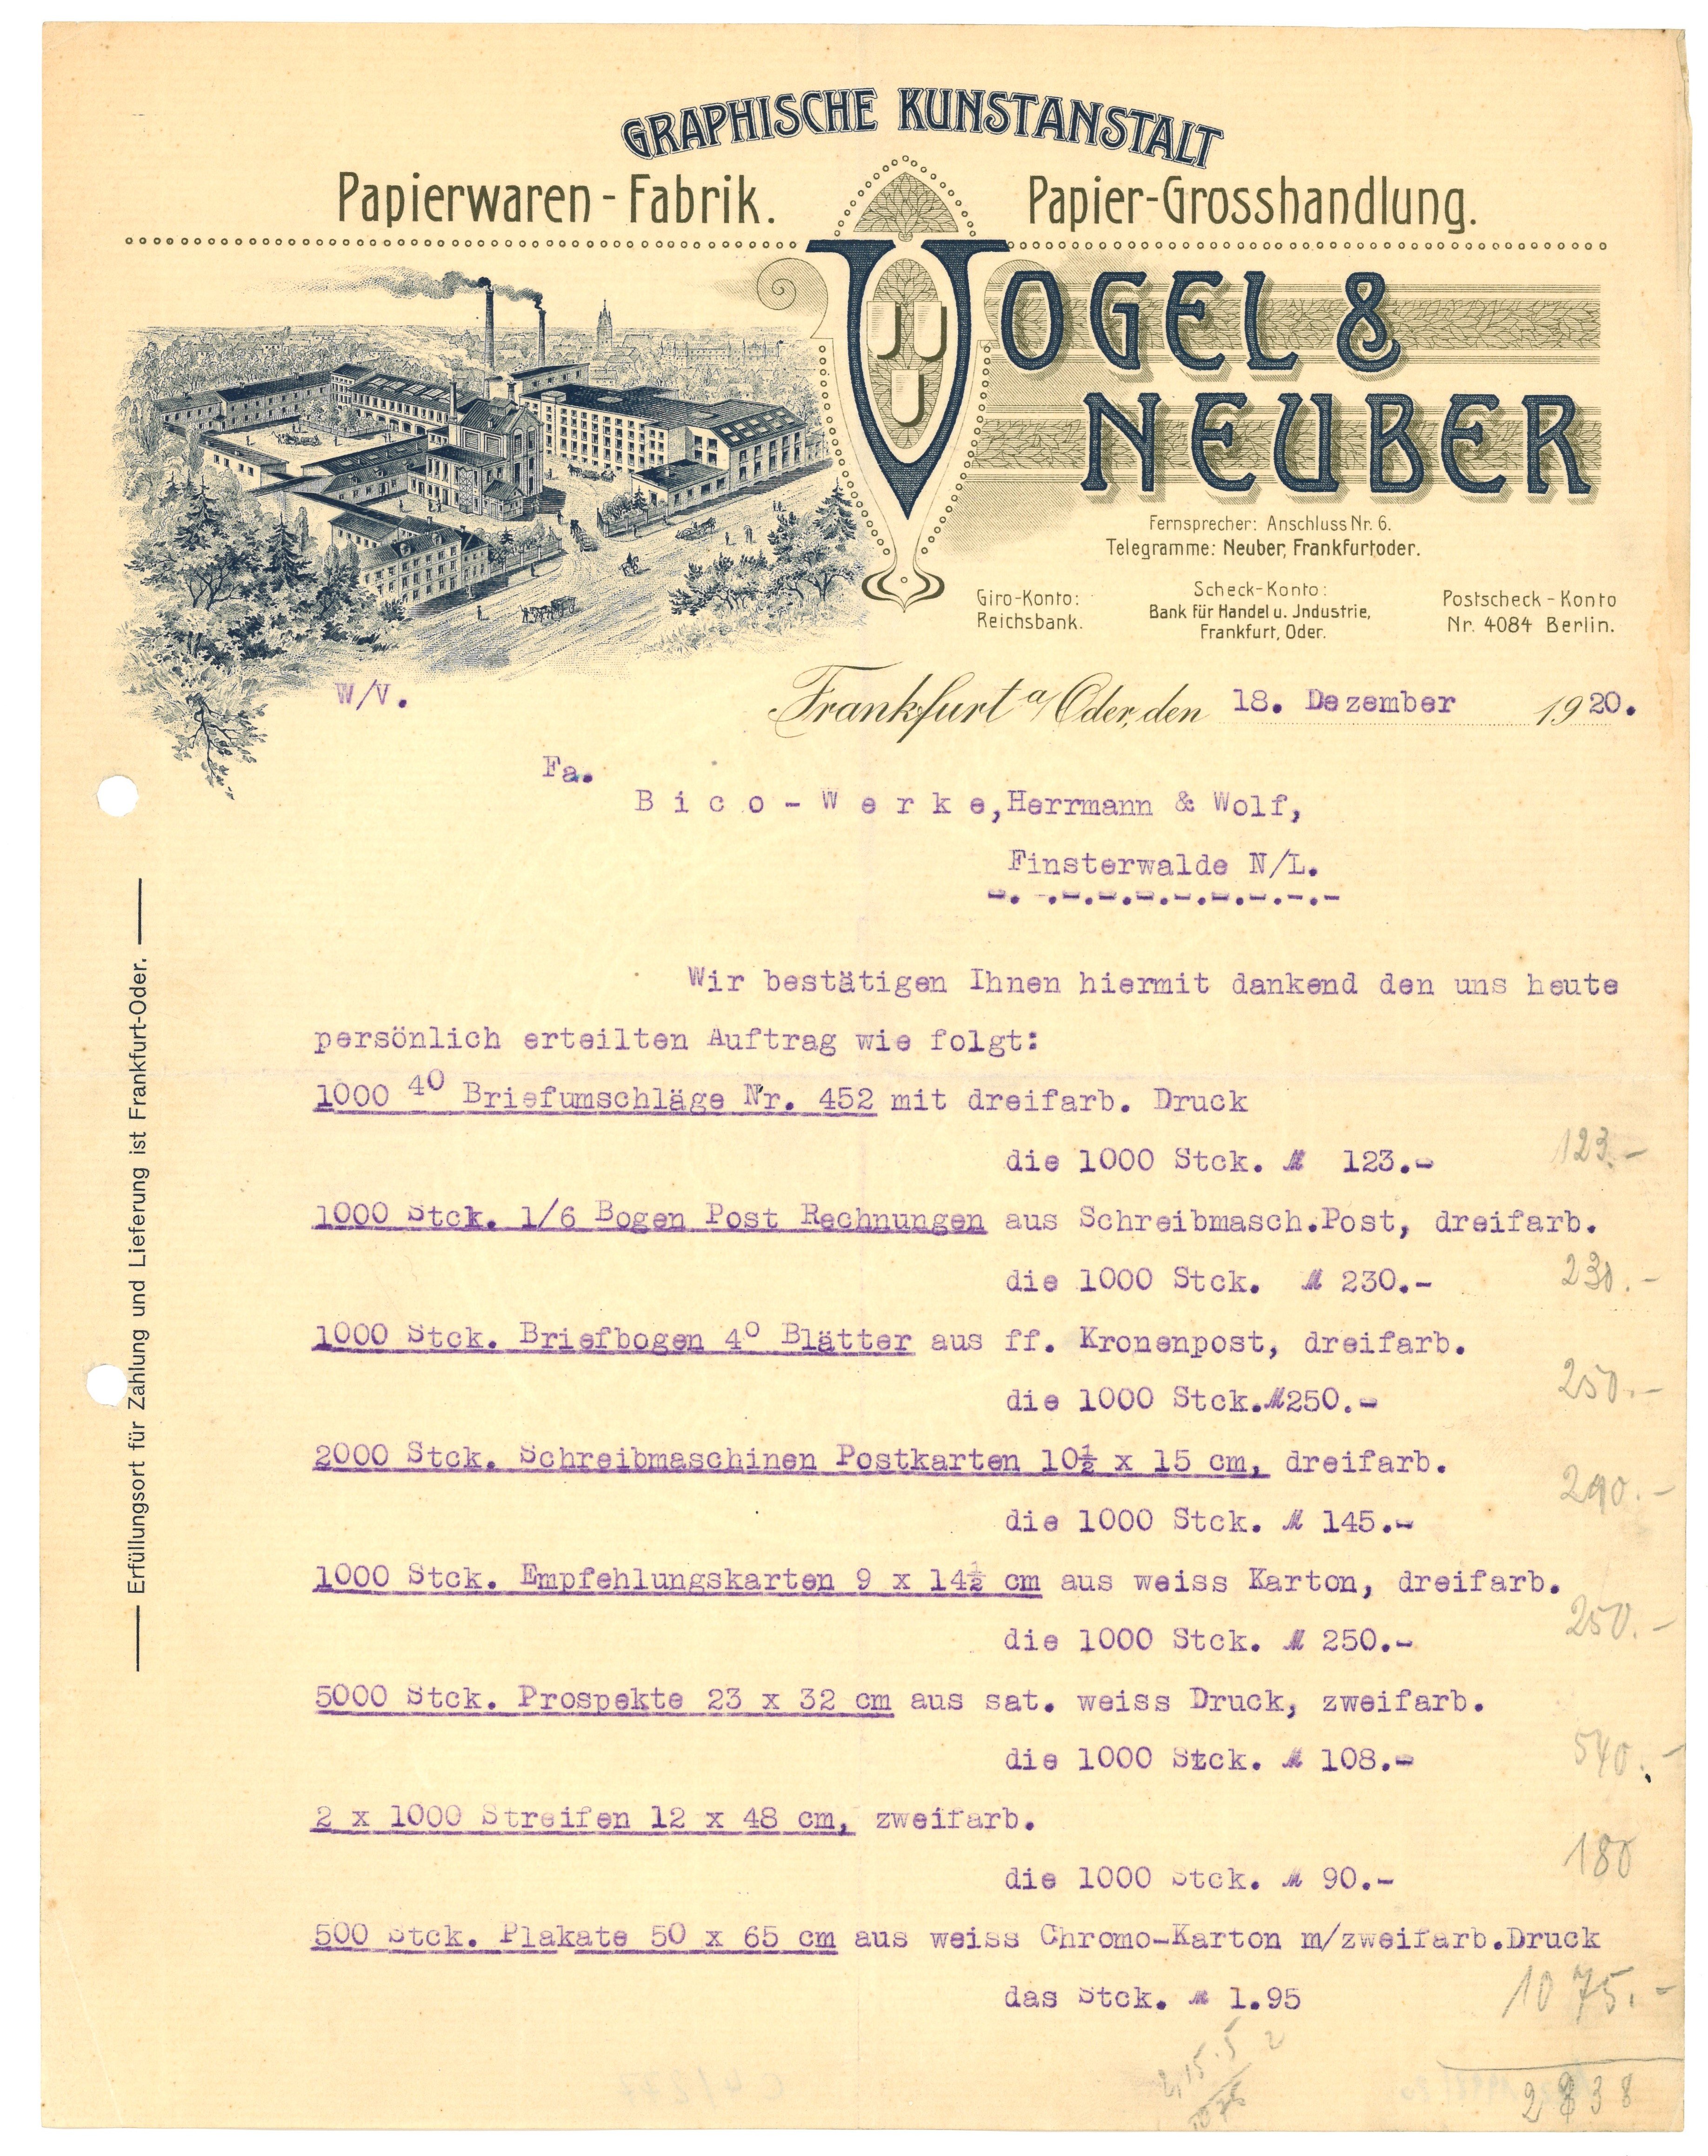 Rechnung der Graphischen Kunstanstalt Vogel & Neuber in Frankfurt (Oder) 1920 (Landesgeschichtliche Vereinigung für die Mark Brandenburg e.V., Archiv CC BY)